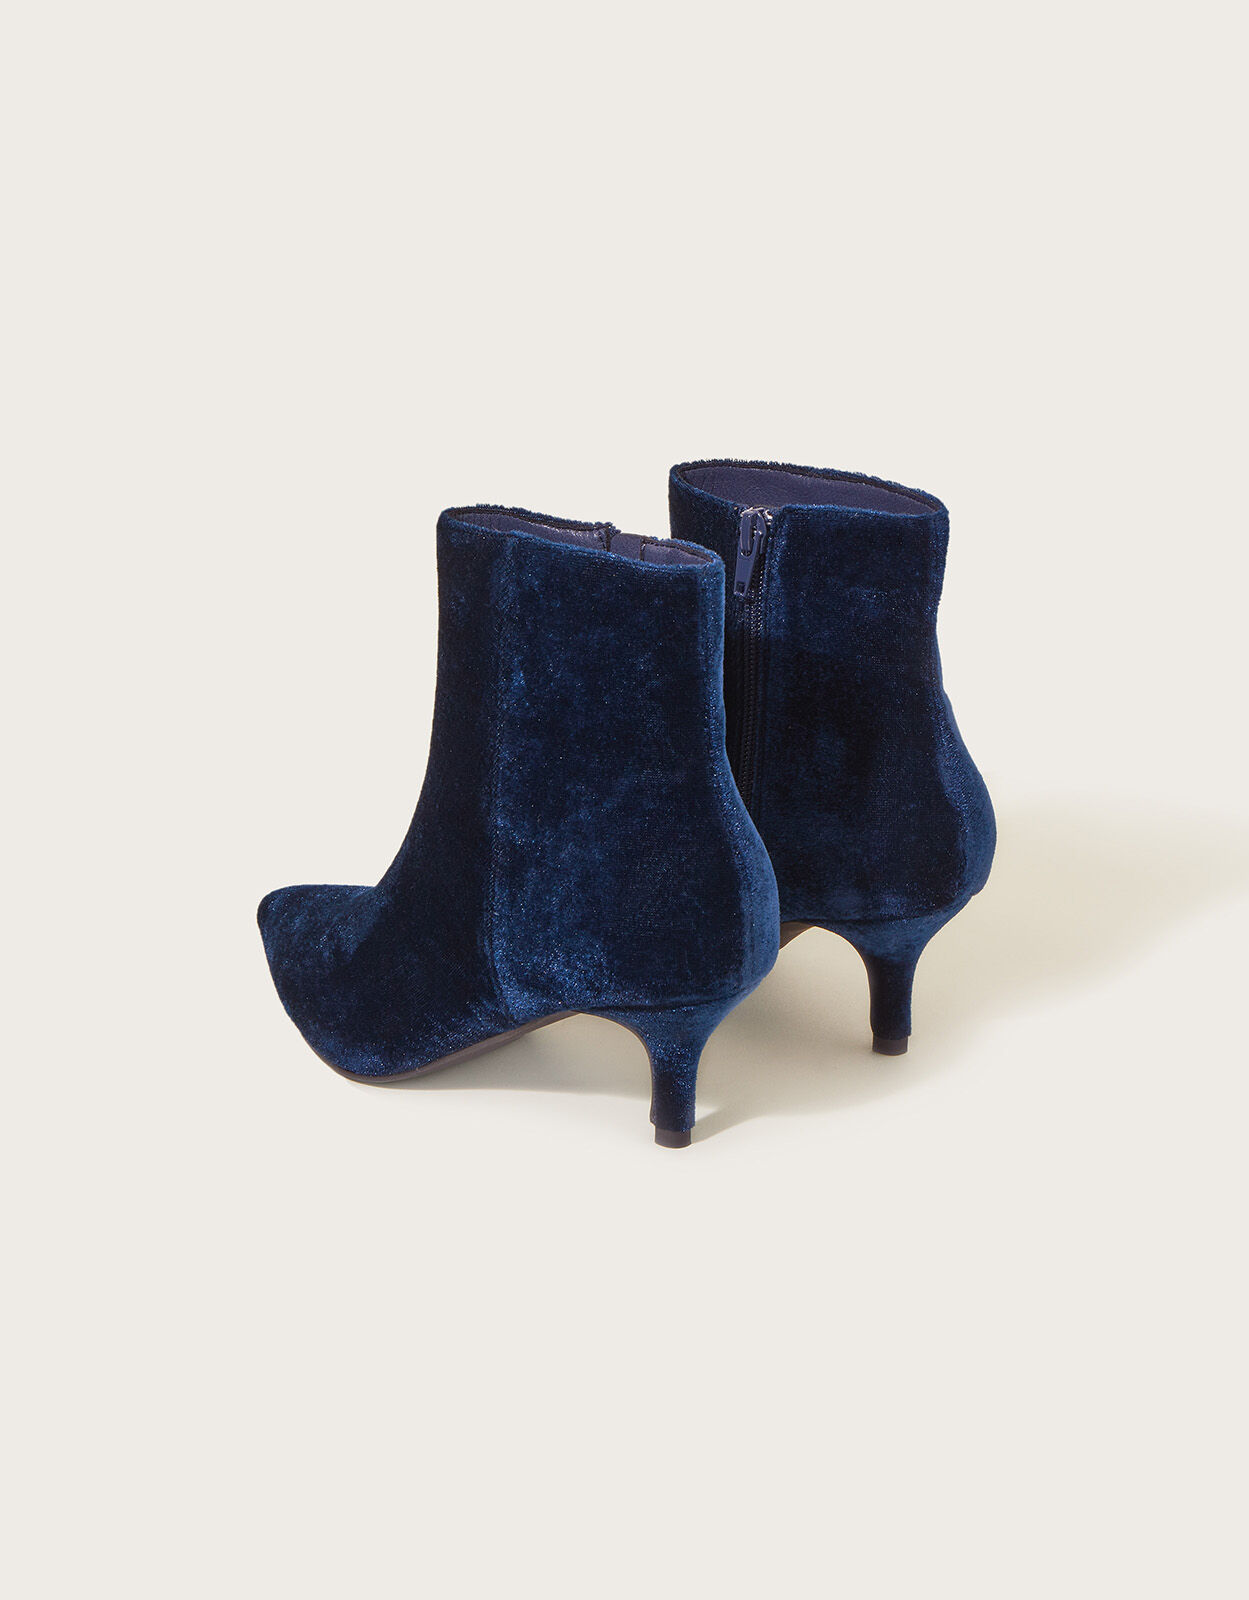 ROYAL SUEDE – NAVY Low heel booties | miMaO ®